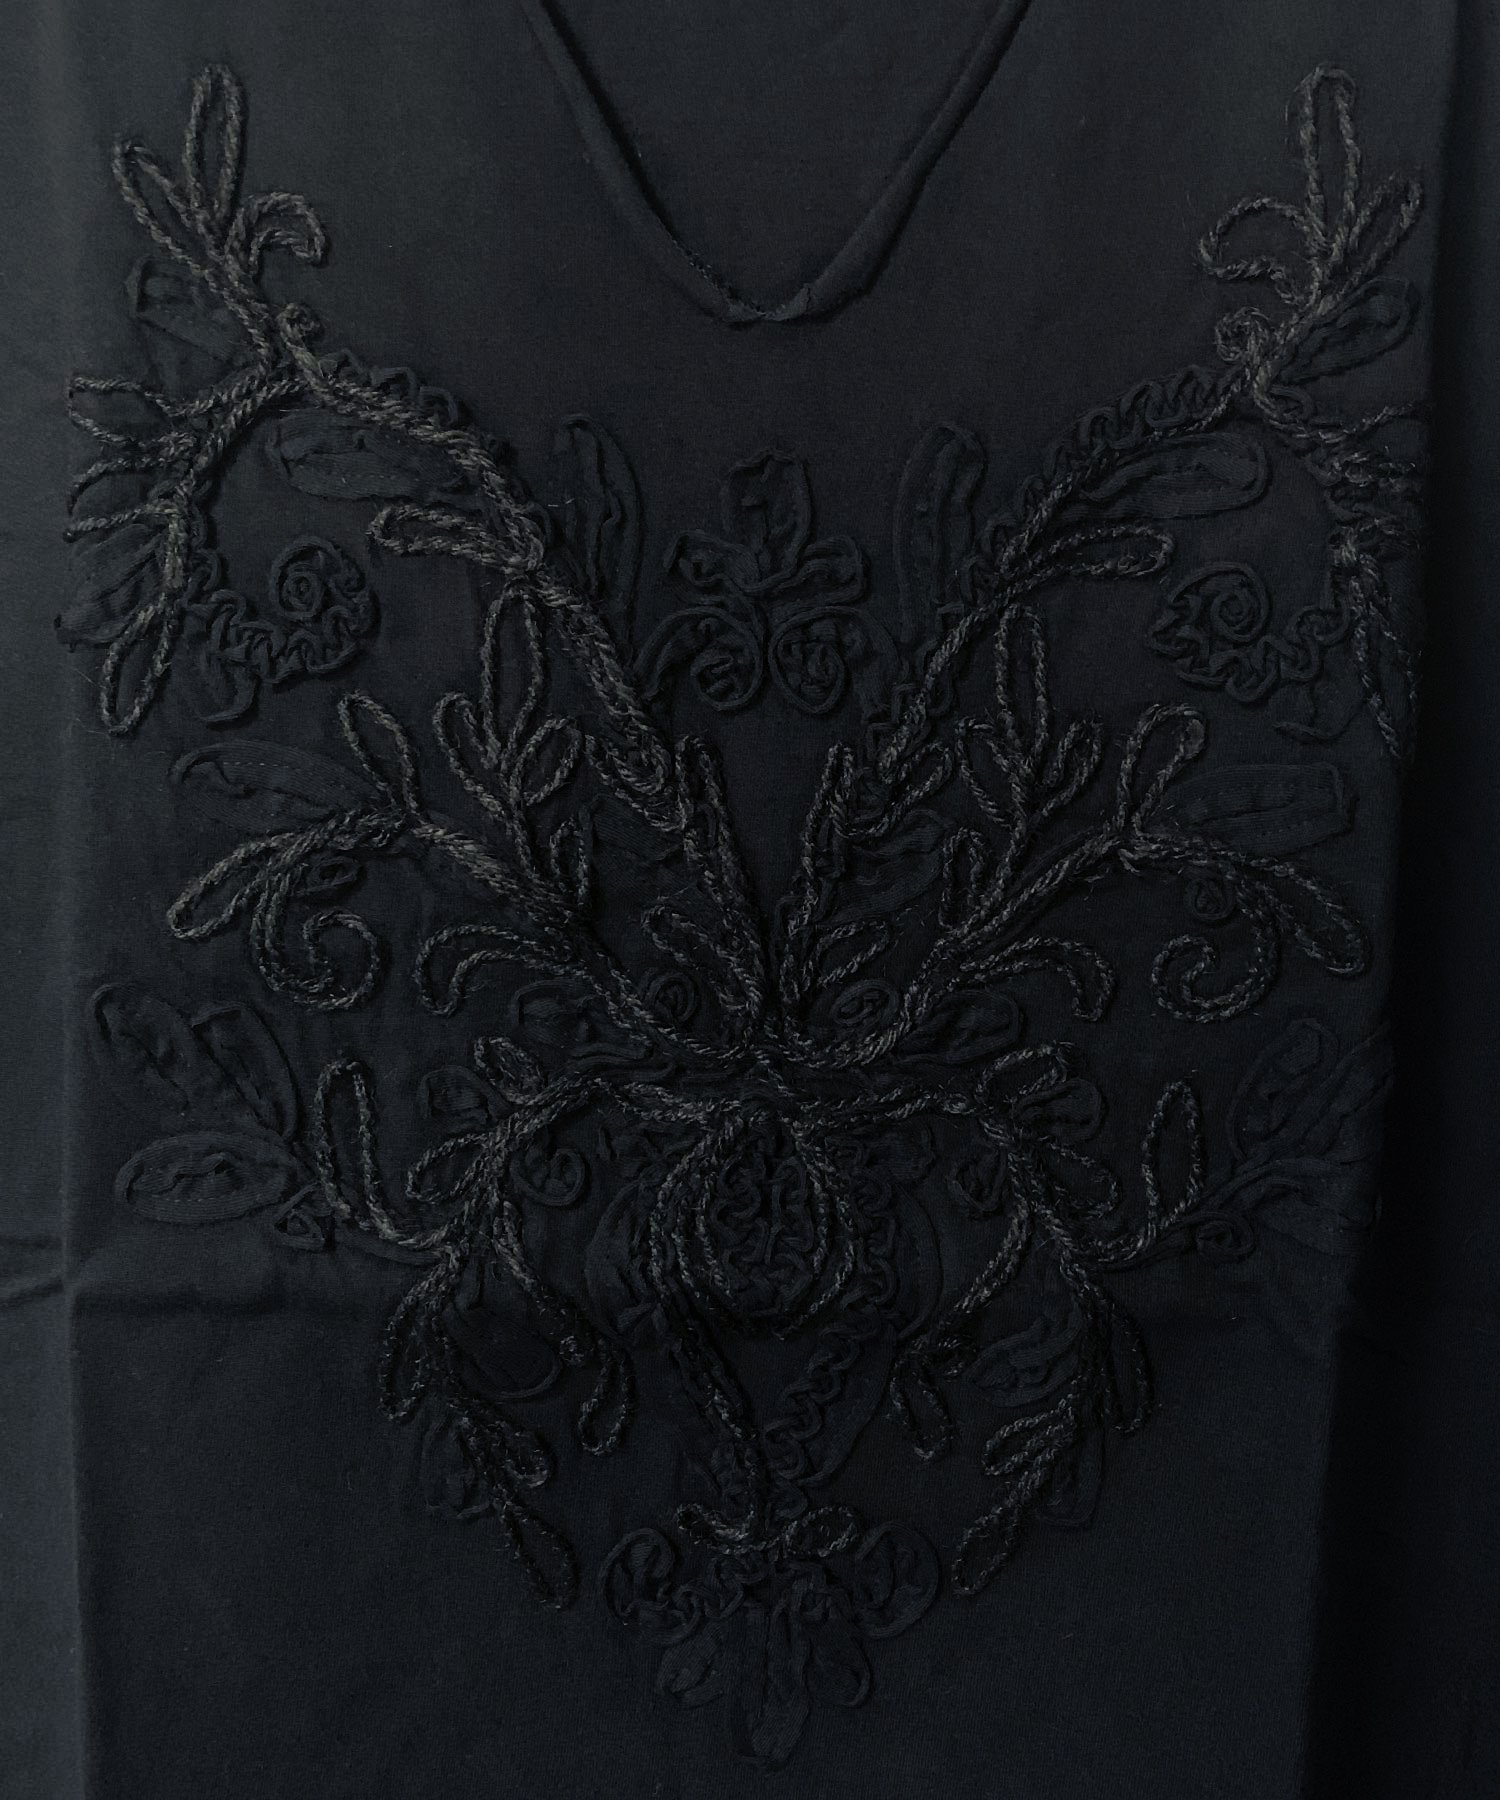 Bennu（ベンヌ）刺繍カットオフVネックTシャツ / ブラック